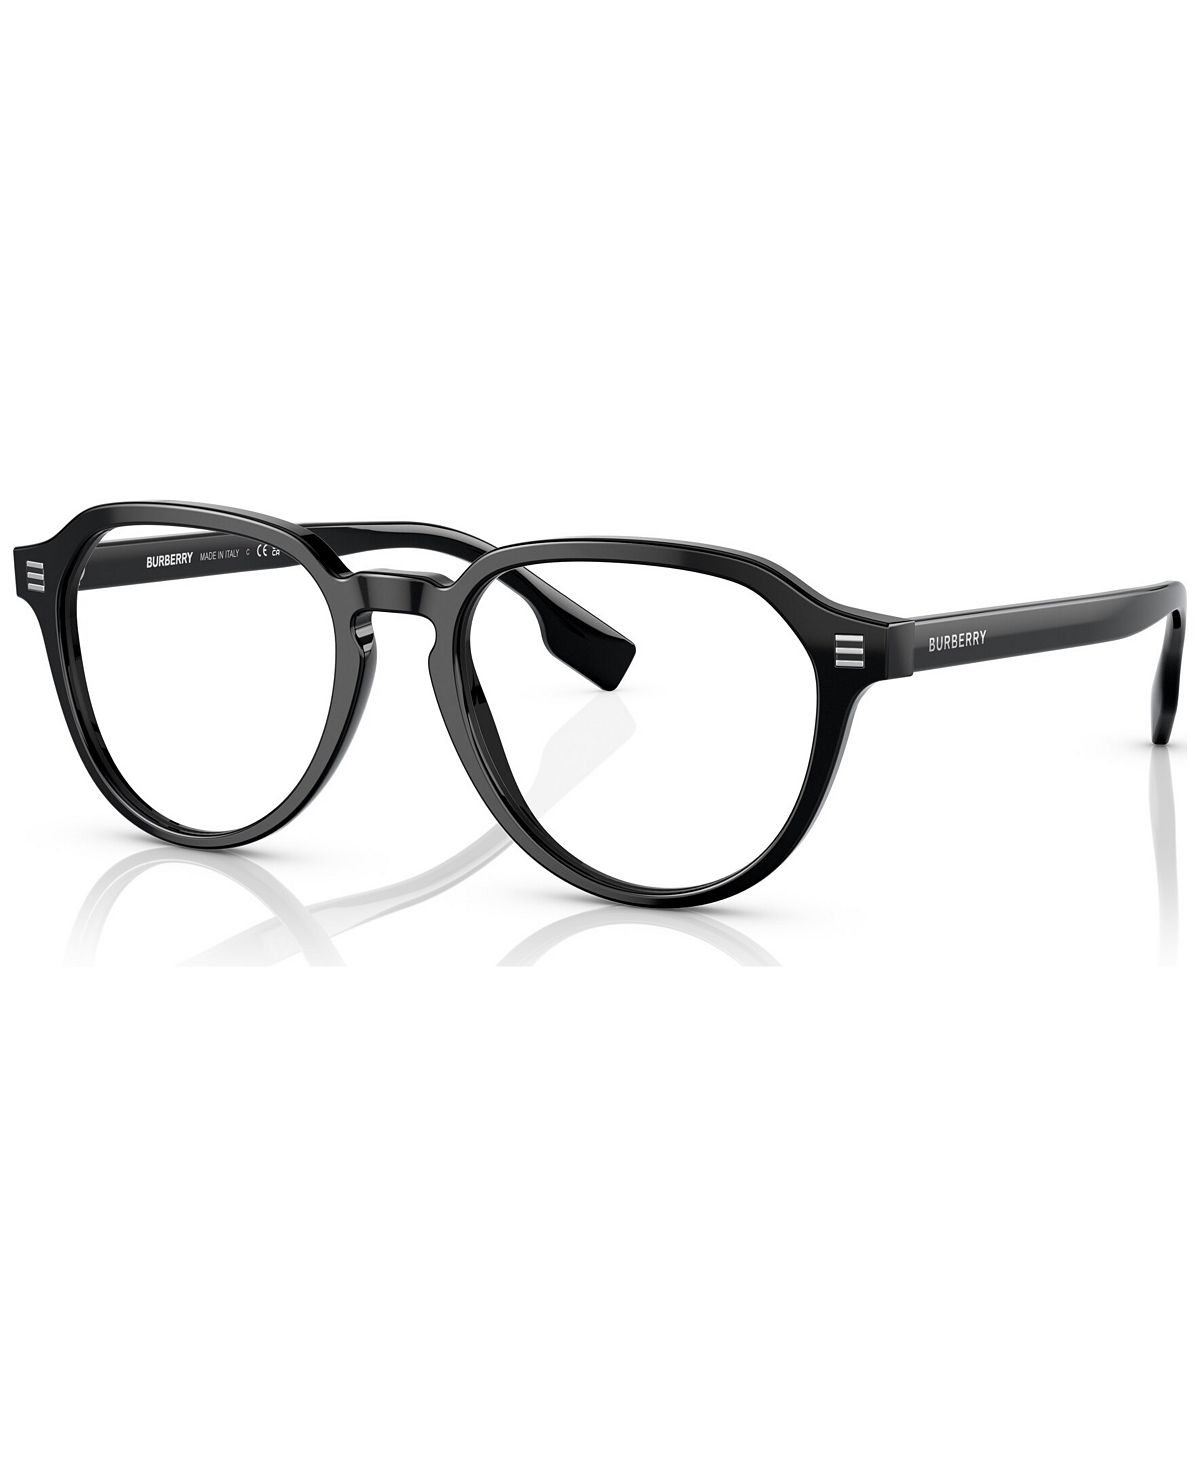 Мужские очки Phantos, BE236854-O Burberry цена и фото